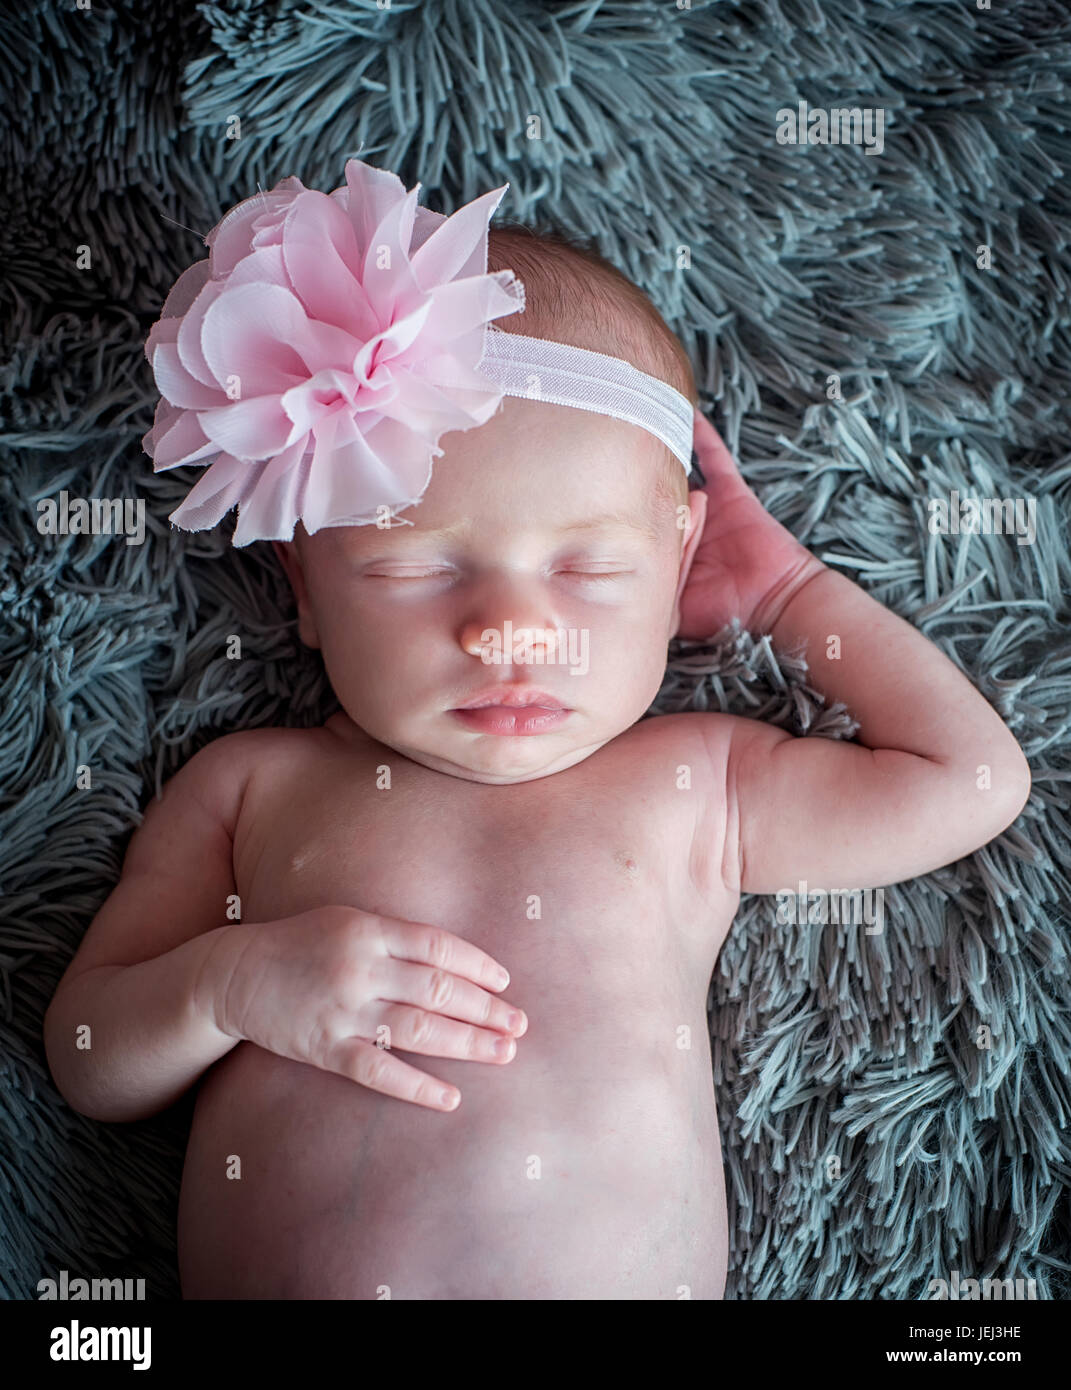 newborn baby sweetly sleeps Stock Photo